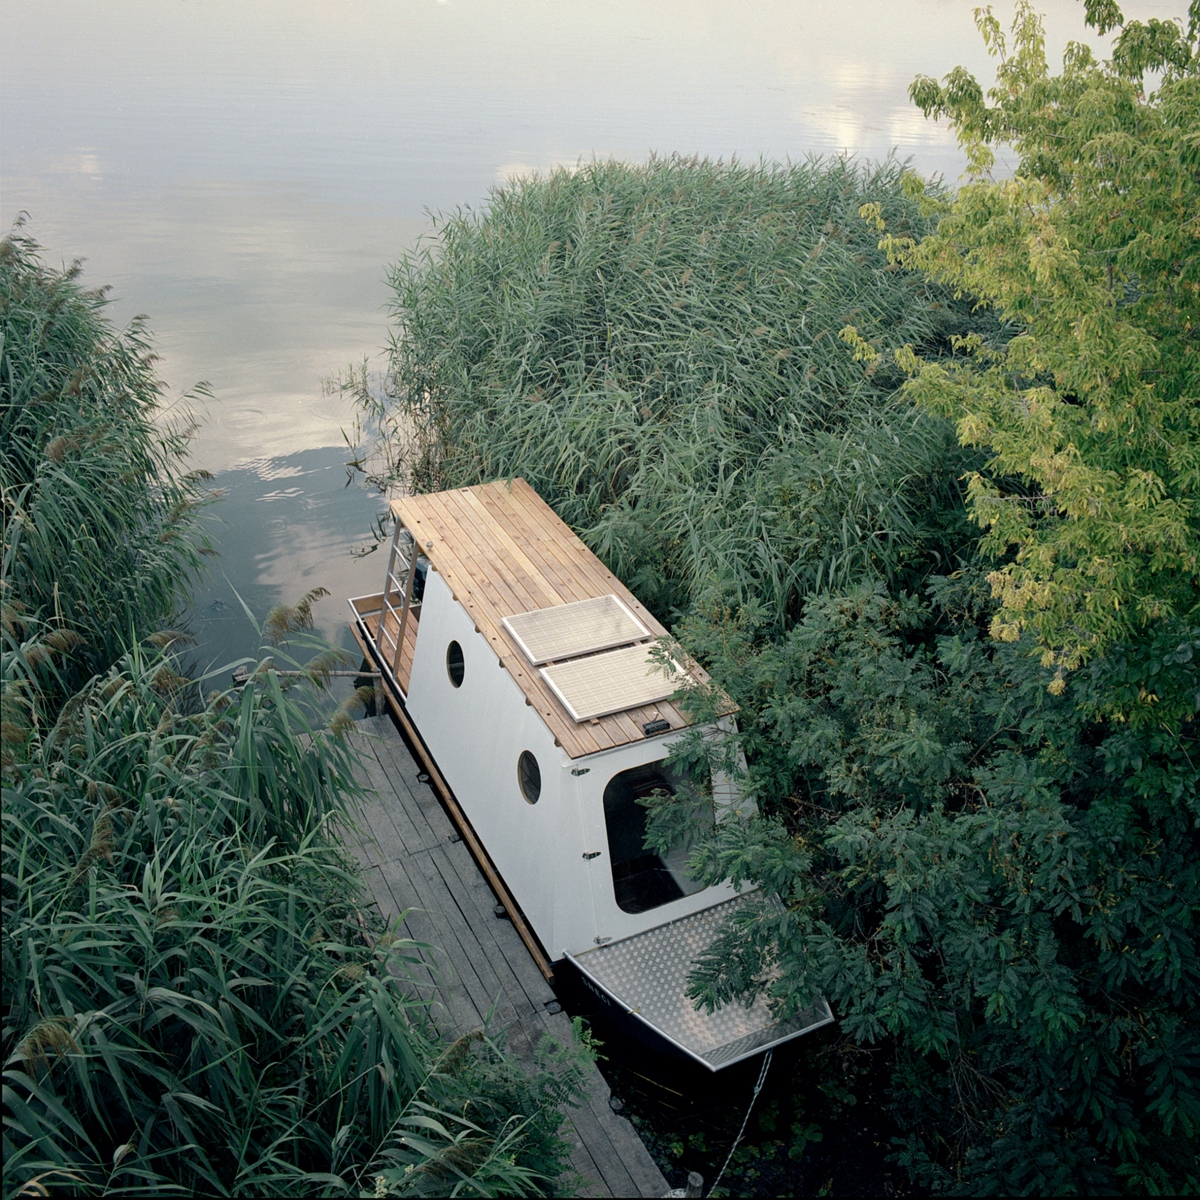 Kiến trúc sư tài năng người Hungary - Tamás Bene, đã thiết kế một ngôi nhà thuyền xinh xắn cho một cặp vợ chồng trẻ đến từ Budapest. Ngôi nhà thuyền vốn là một chiếc thuyền đánh cá địa phương, neo tại hồ Tisza - hồ chứa nhân tạo nằm trong khu bảo tồn thiên nhiên rộng 7.000 ha, là nơi sinh sống của động vật hoang dã trong đó có hơn 100 loài chim khác nhau.